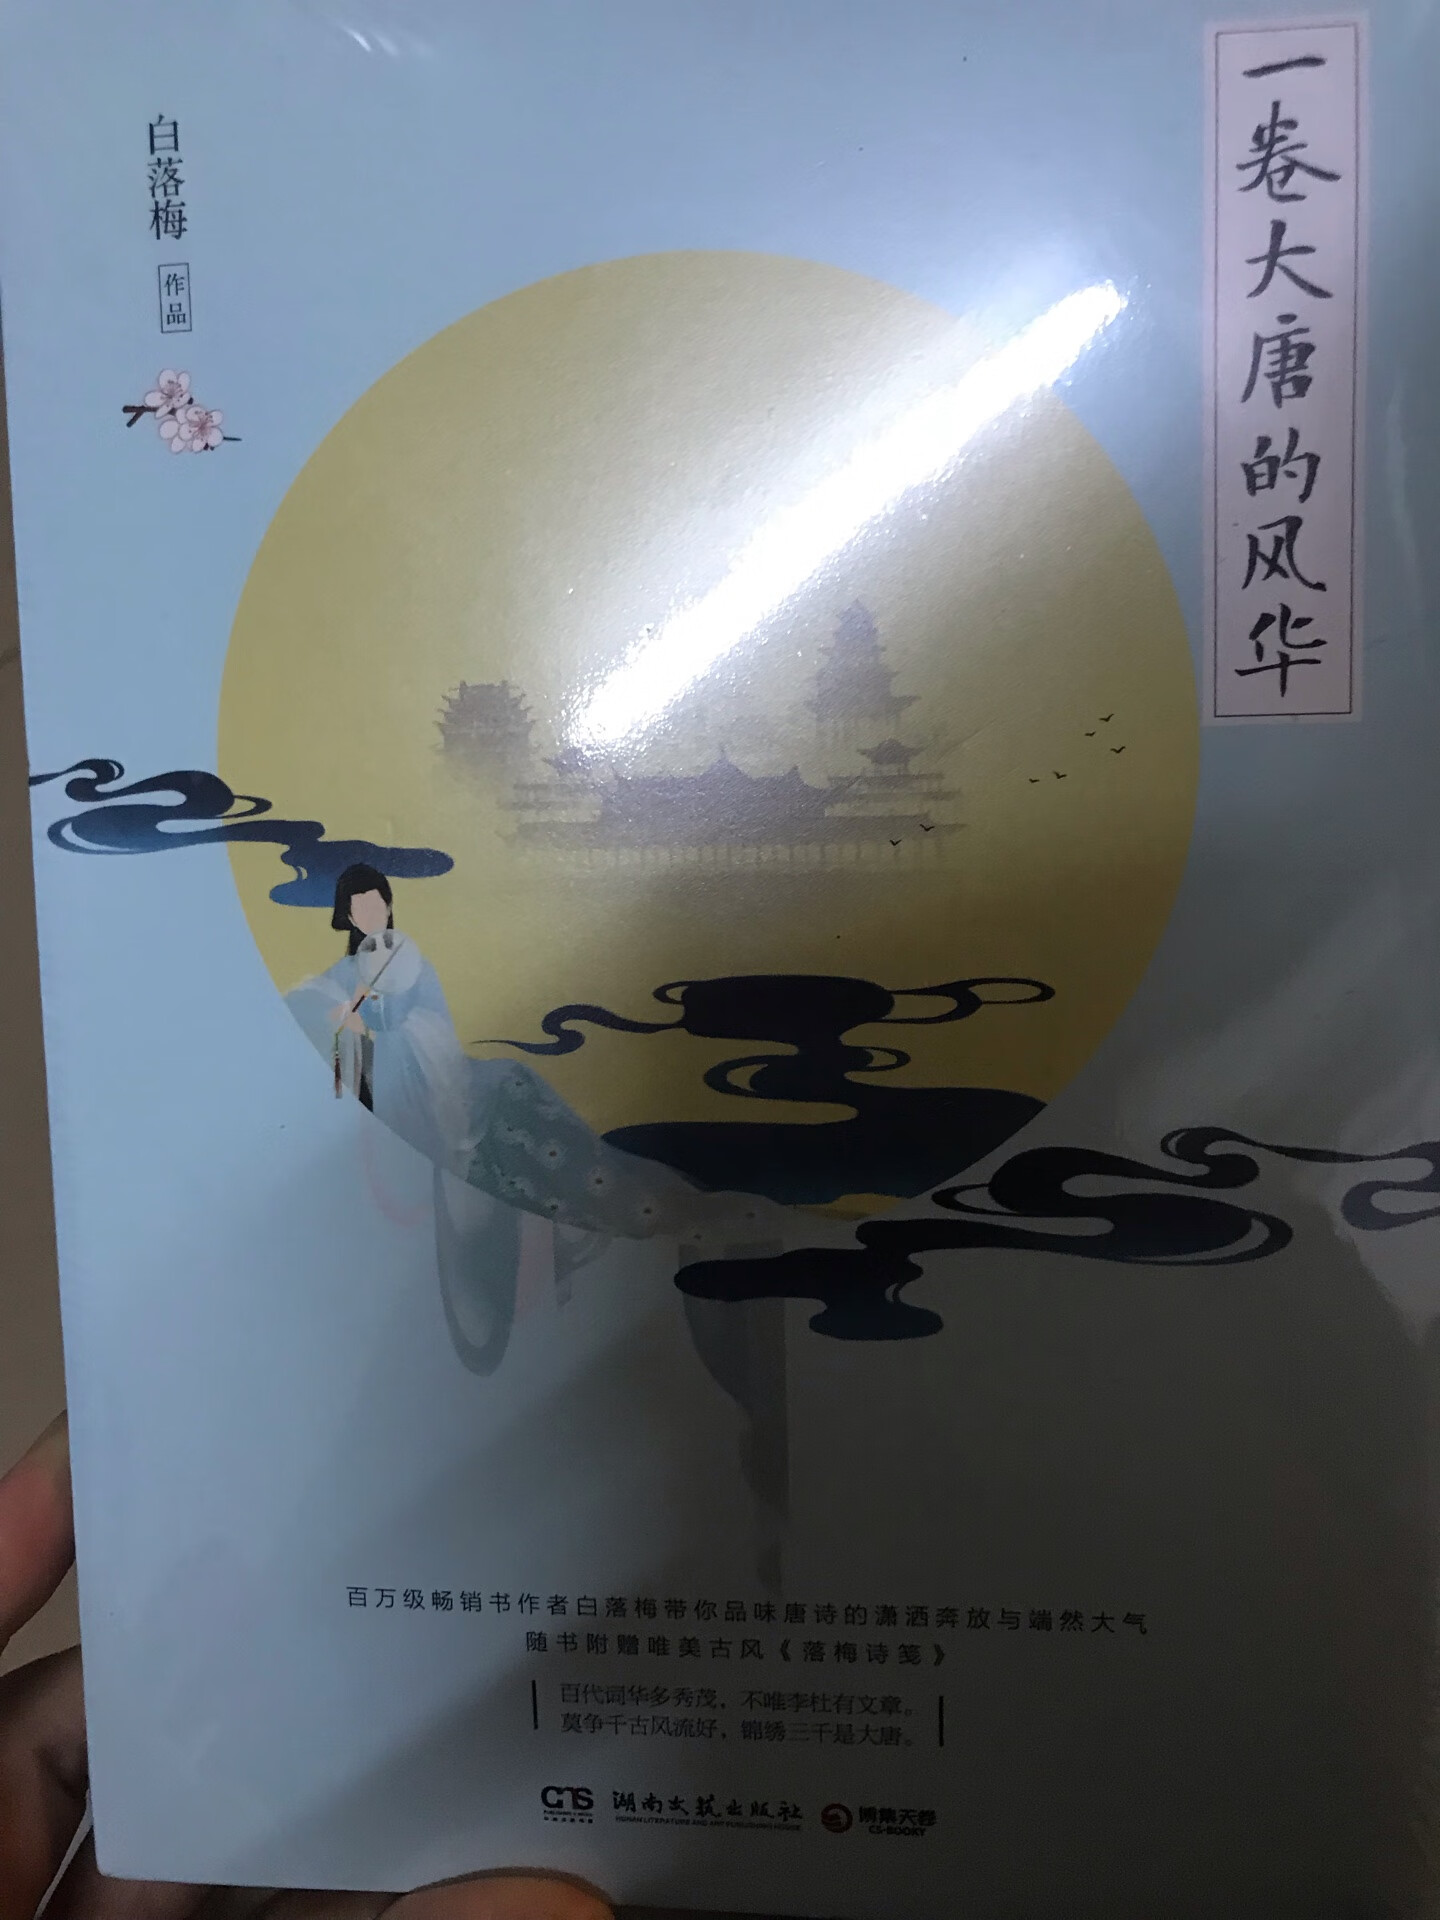 我很喜欢读跟朝代有关系的书，可以让你了解中国的历史人文，社会现象，发展轨迹，能学到很多文明的知识，听到文明的声音，这让人很感动。所以我挑了这本书，看编者按觉得还不错，但愿内容精彩。